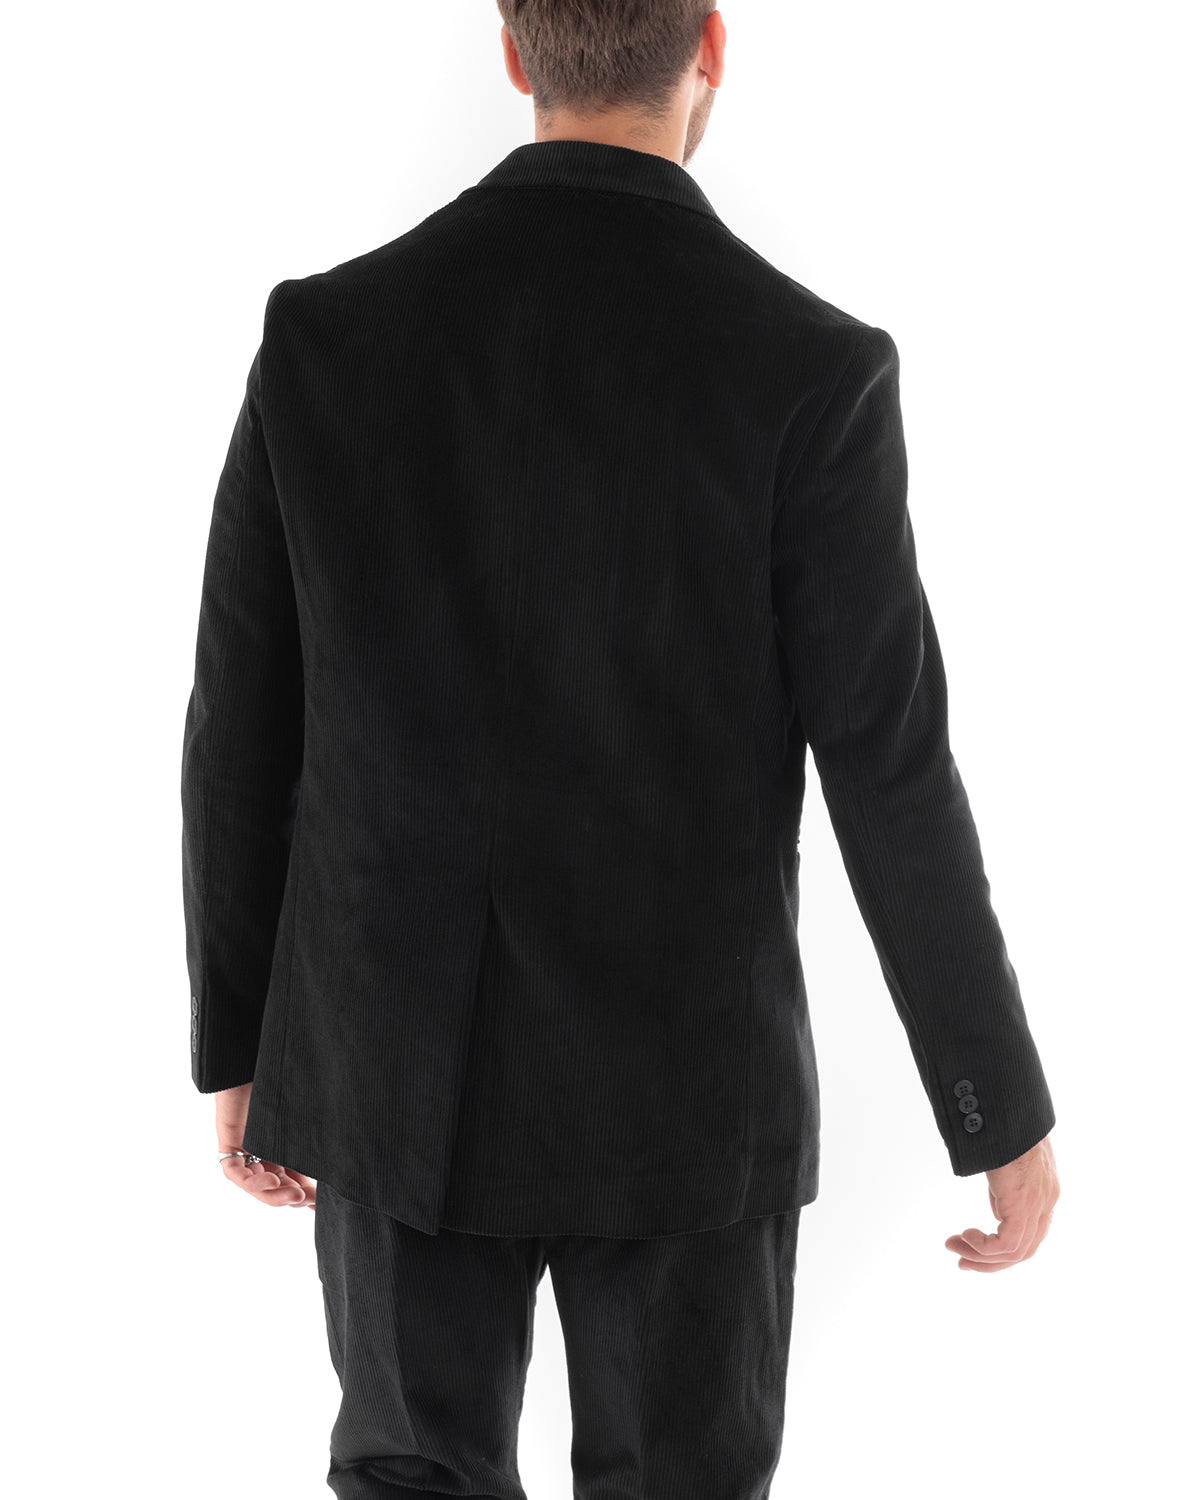 Double-Breasted Men's Suit Velvet Suit Jacket Pants Black Elegant Ceremony GIOSAL-OU2192A